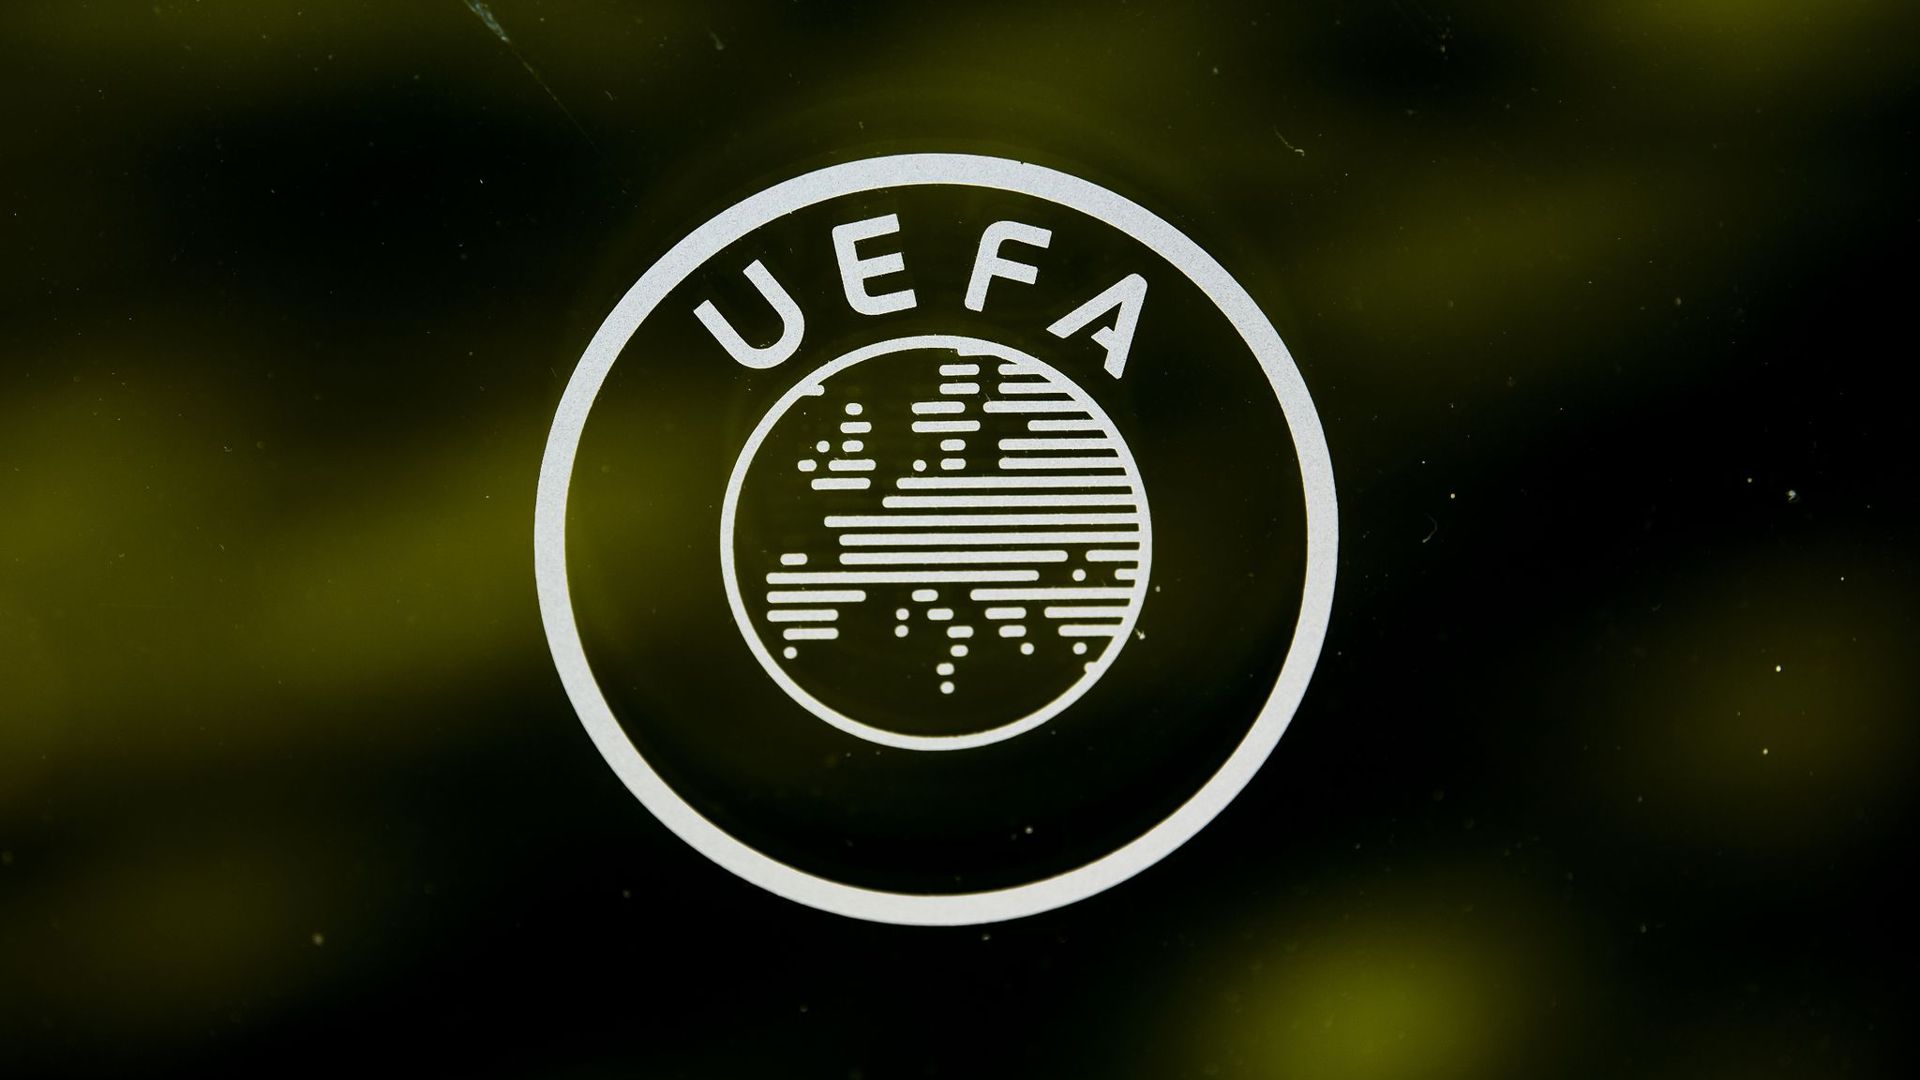 Die UEFA denkt einem Bericht zufolge über eine Reform des Financial Fair Play nach.